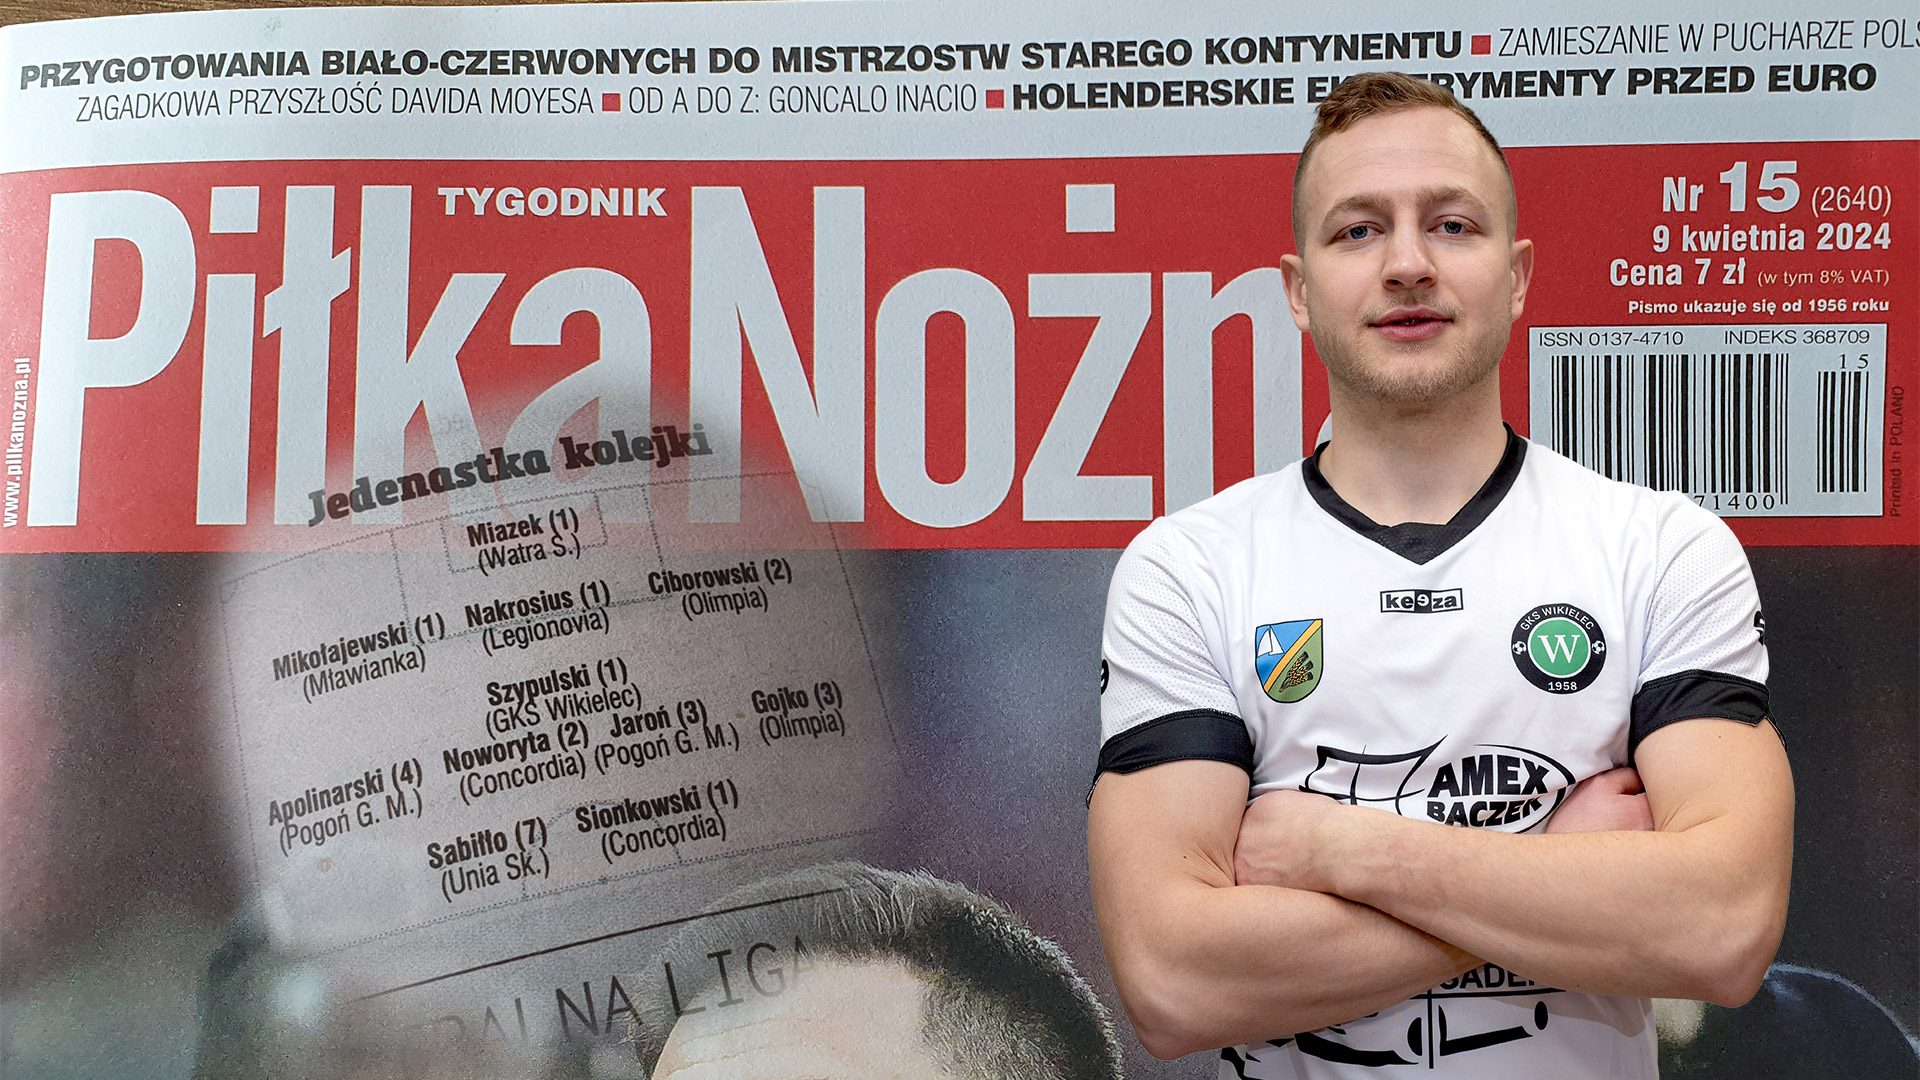 Sebastian Szypulski w Jedenastce kolejki tygodnika Piłka Nożna